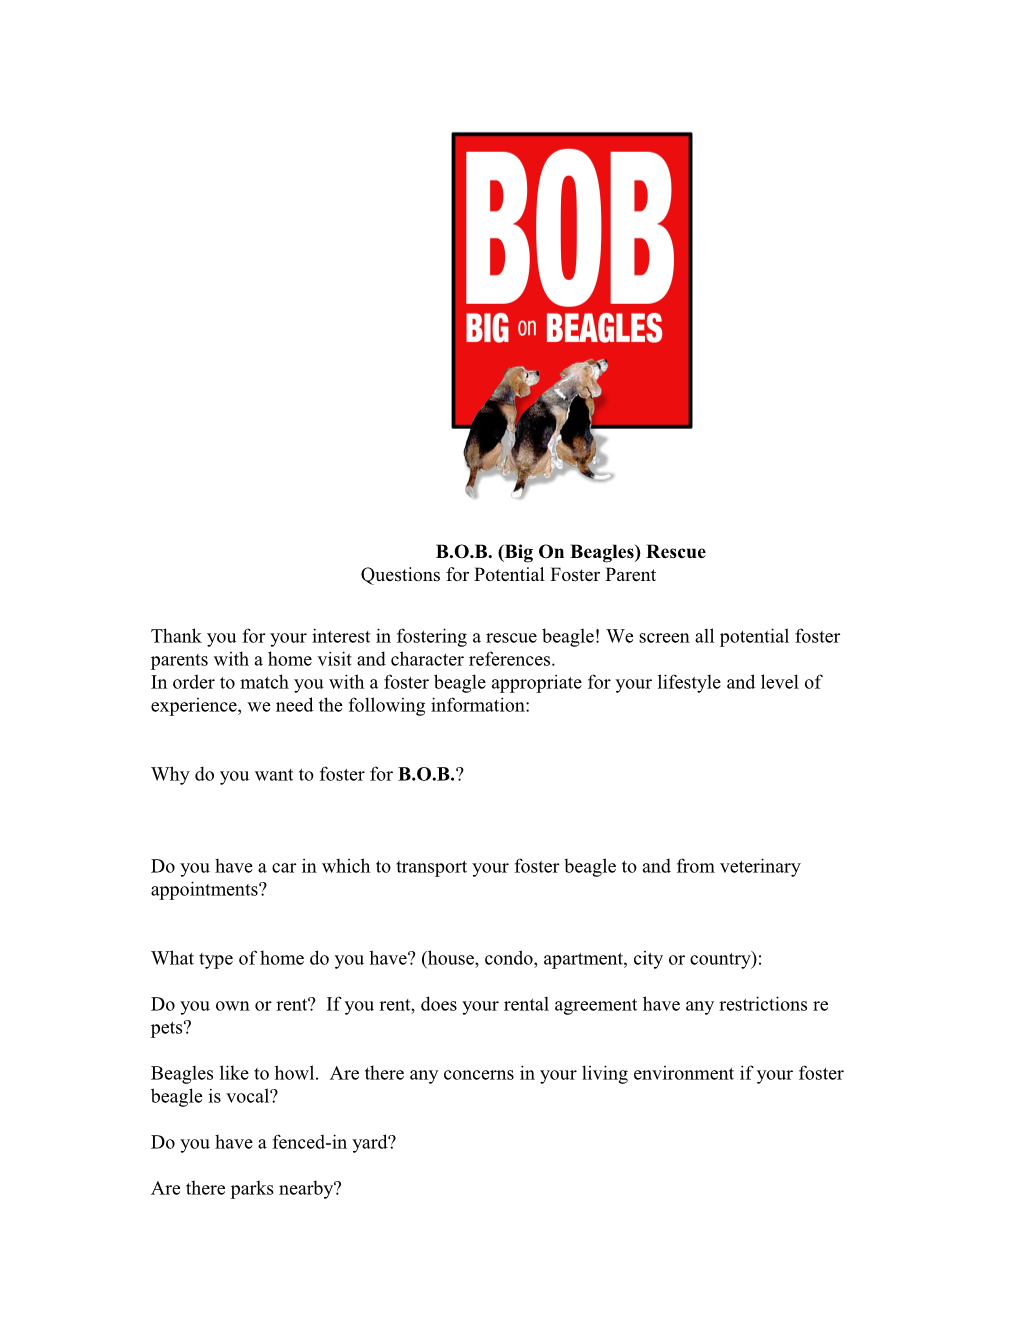 B.O.B. (Big on Beagles) Rescue